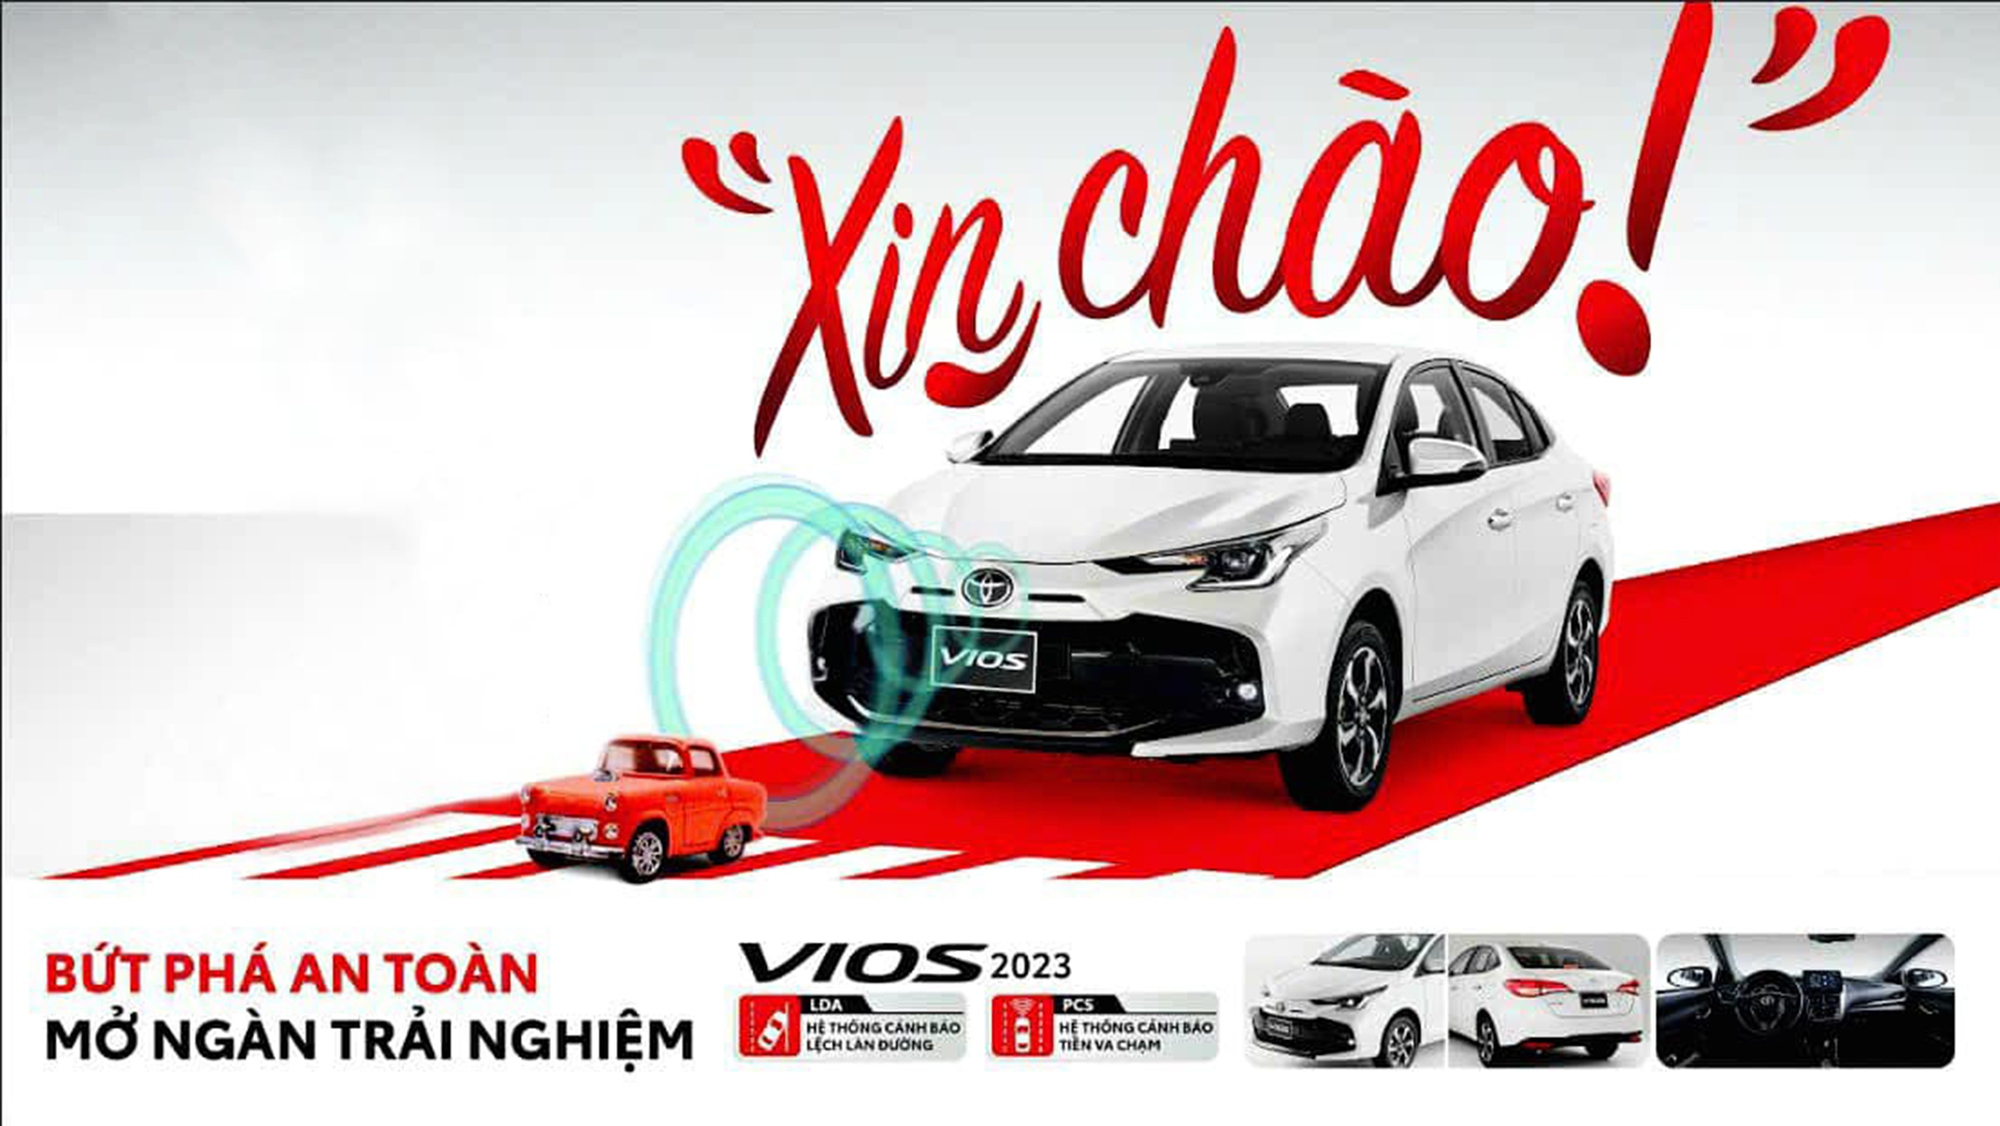 Toyota Vios 2023 lần đầu lộ ảnh chính thức tại Việt Nam: Đầu xe mới, thêm nhiều trang bị, giá bán không đổi - Ảnh 2.